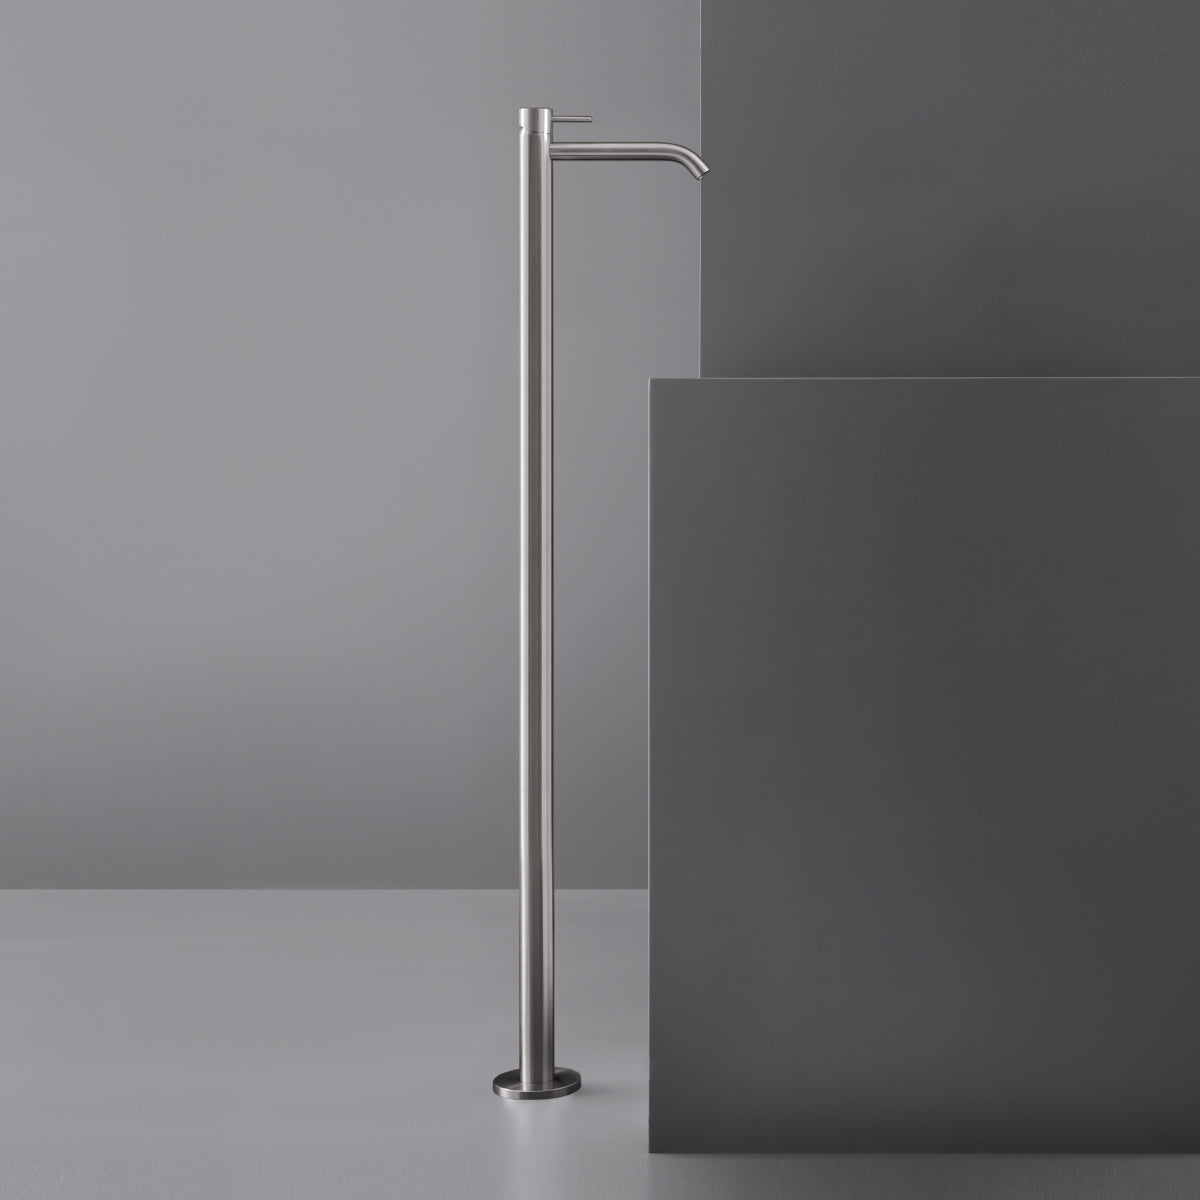 Ceadesign MILO360 - Miscelatore a colonna da pavimento per lavabo H. 1105 mm - MIL20+INC01